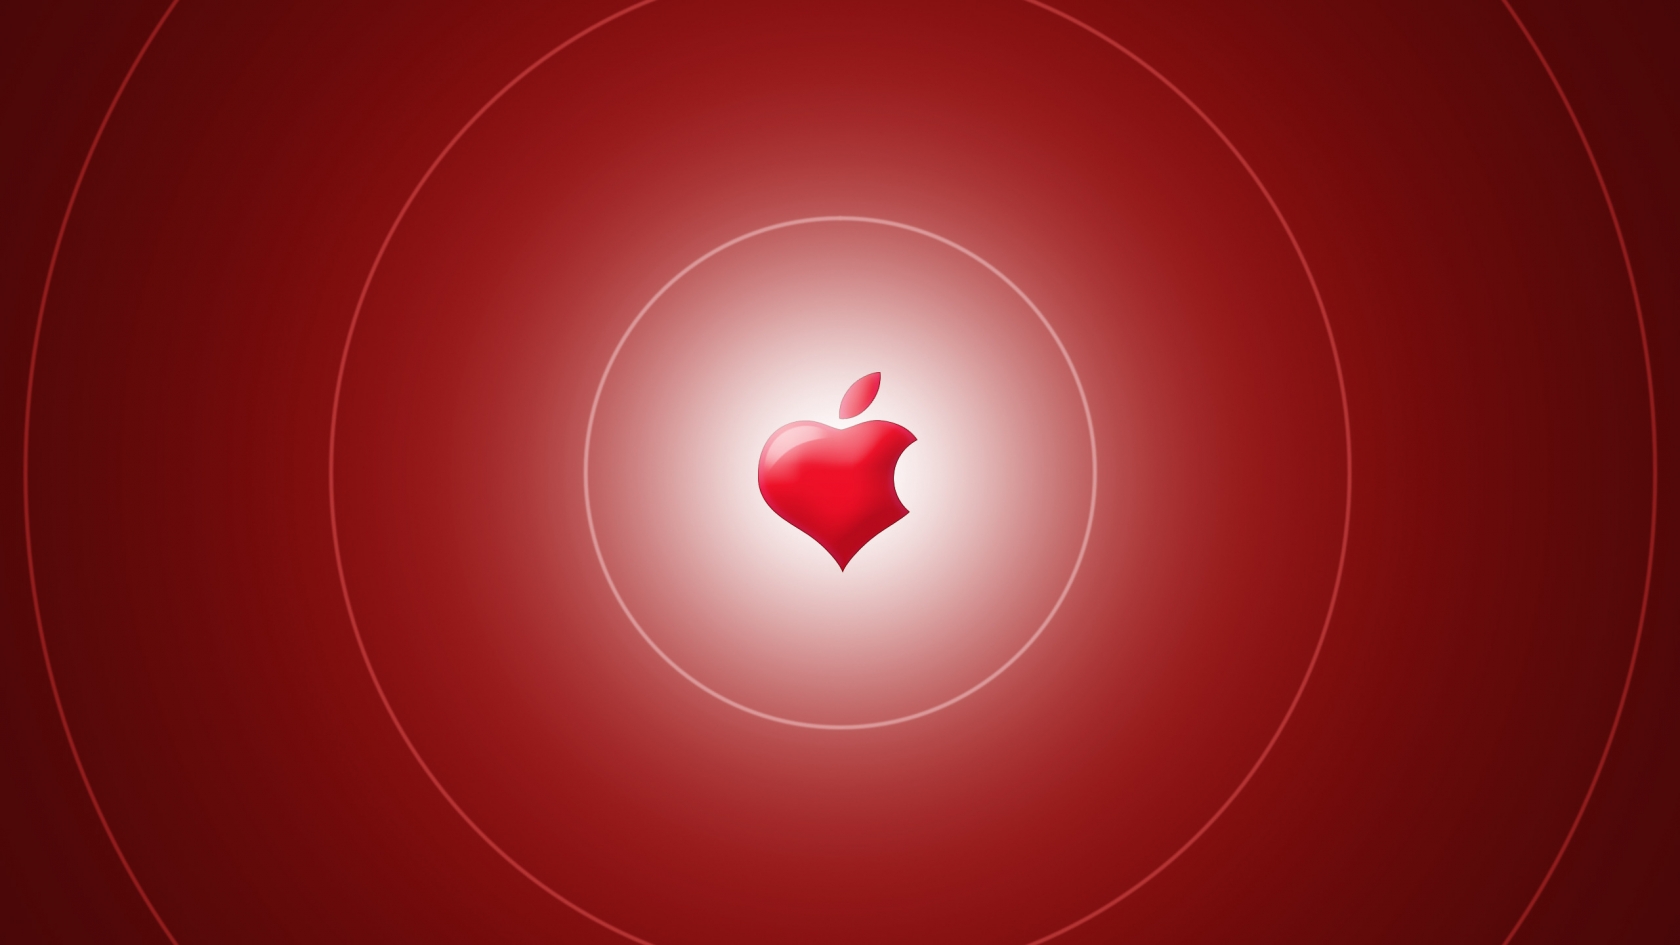 Apple Heart for 1680 x 945 HDTV resolution